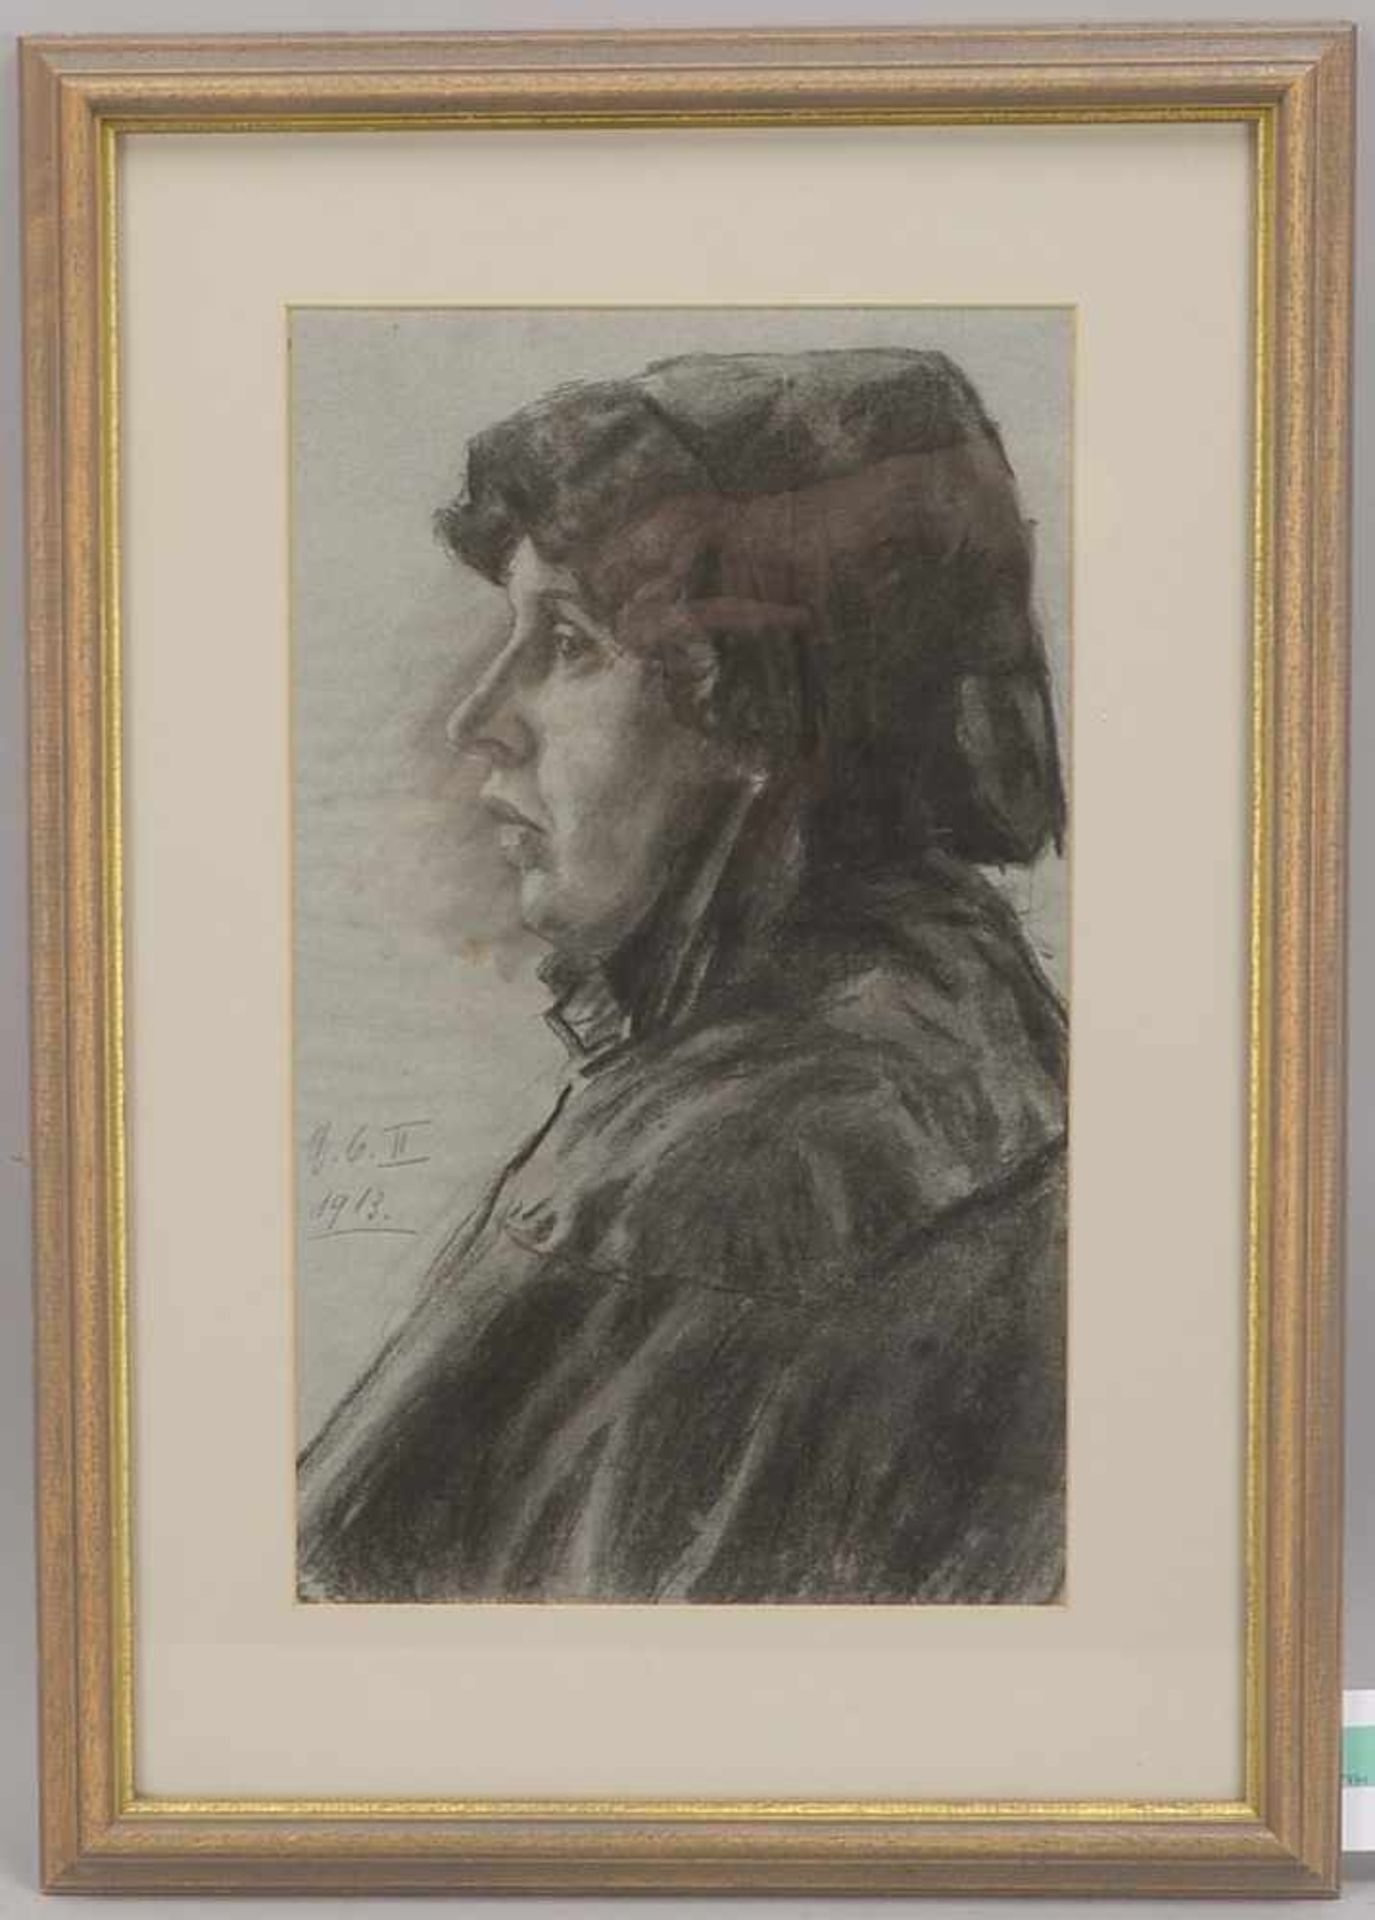 Monogrammistin S.B., 'Frauenportrait', Kohlezeichnung, im Blatt monogrammiert 'SB II' und datiert '